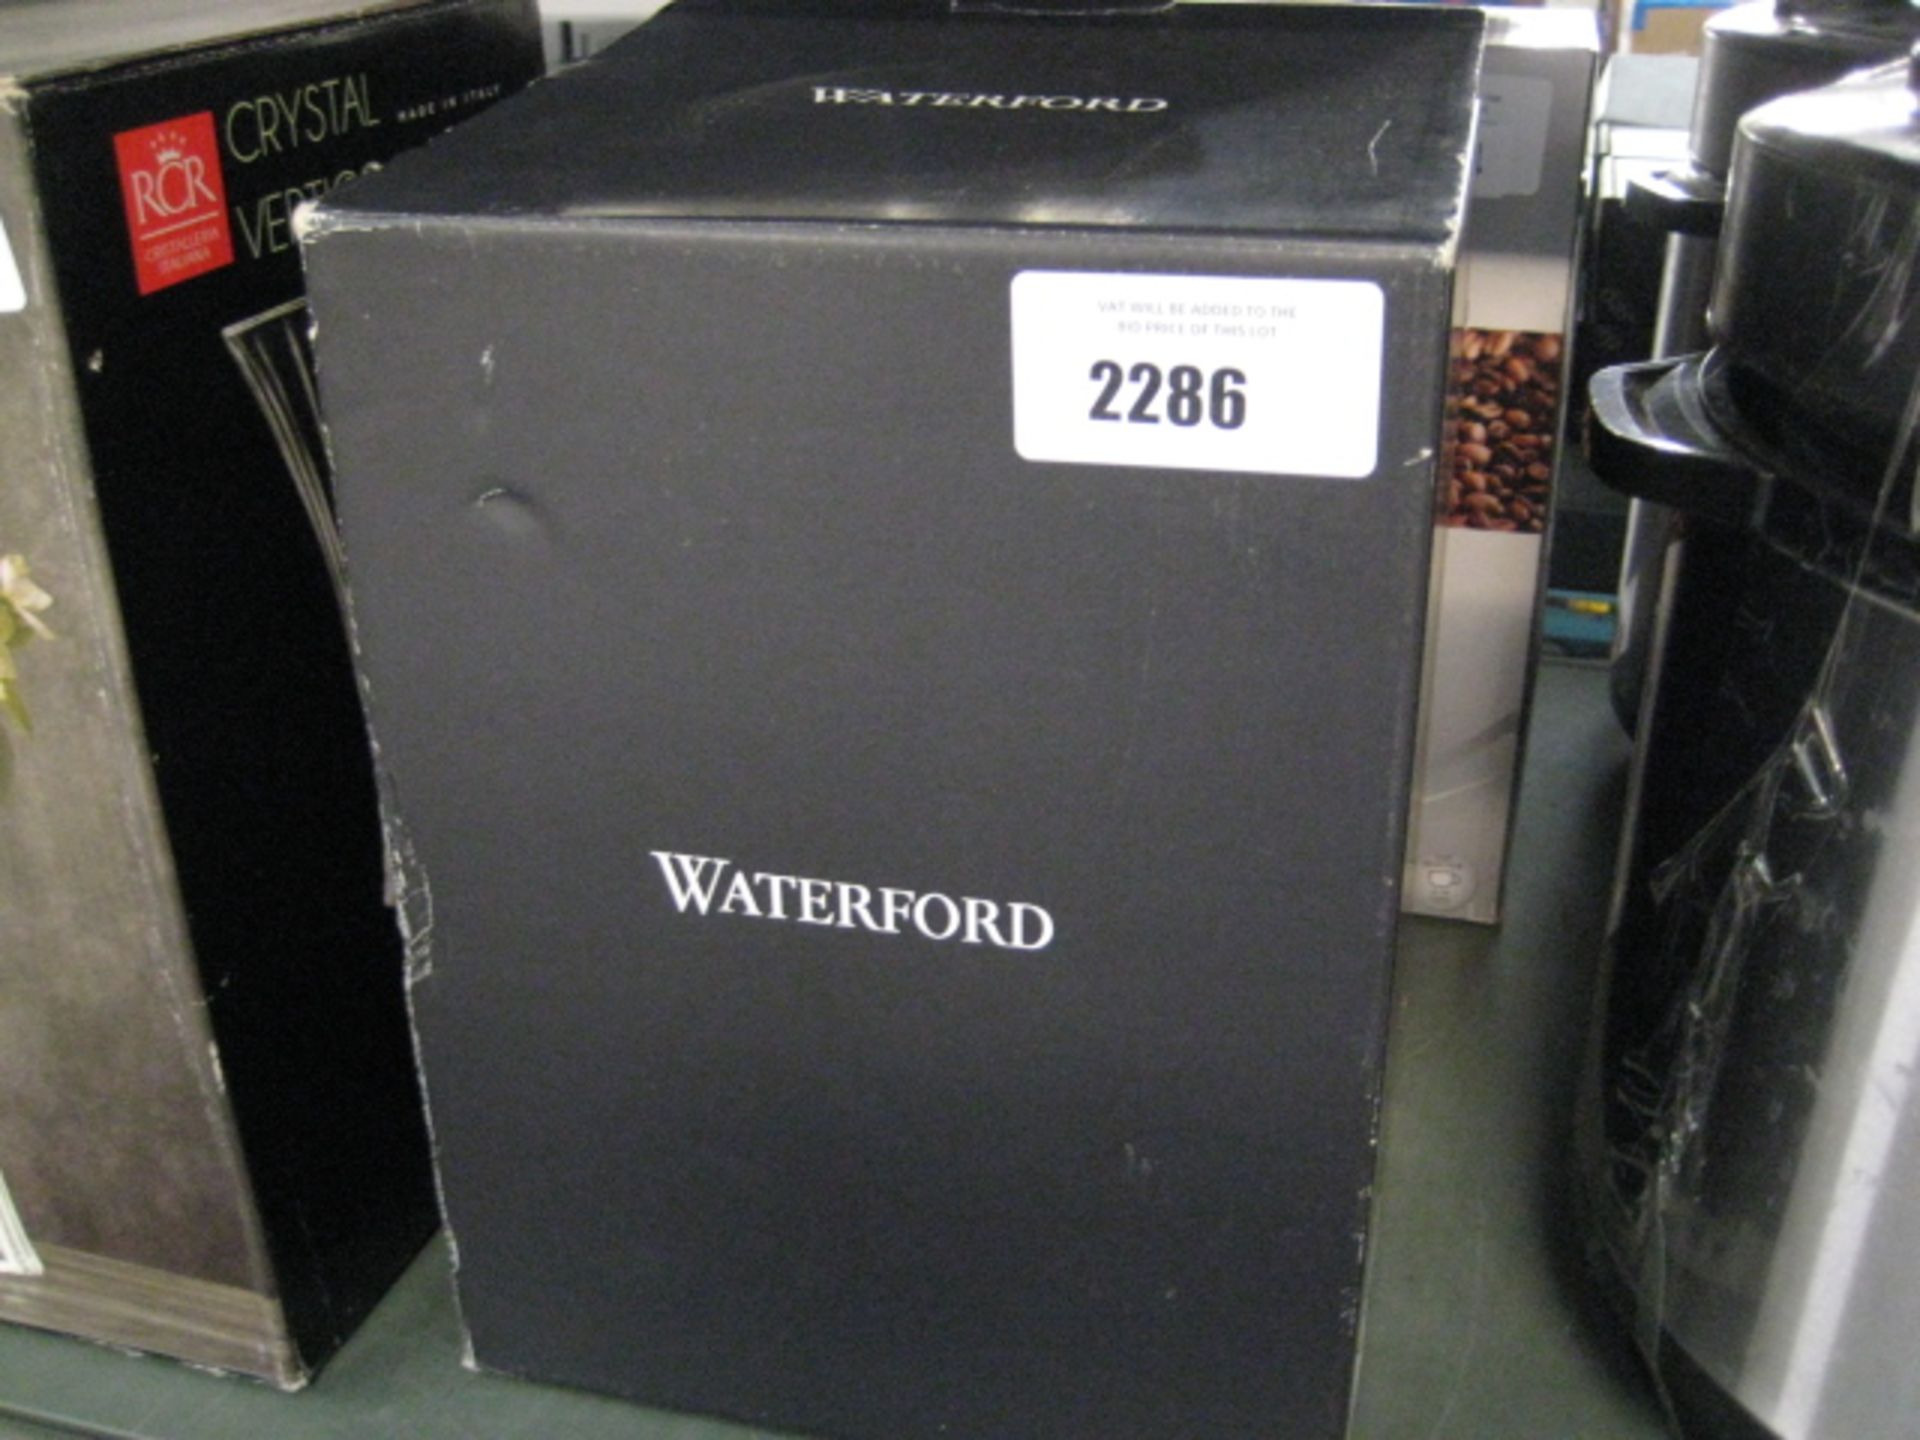 Boxed Waterford crystal vase